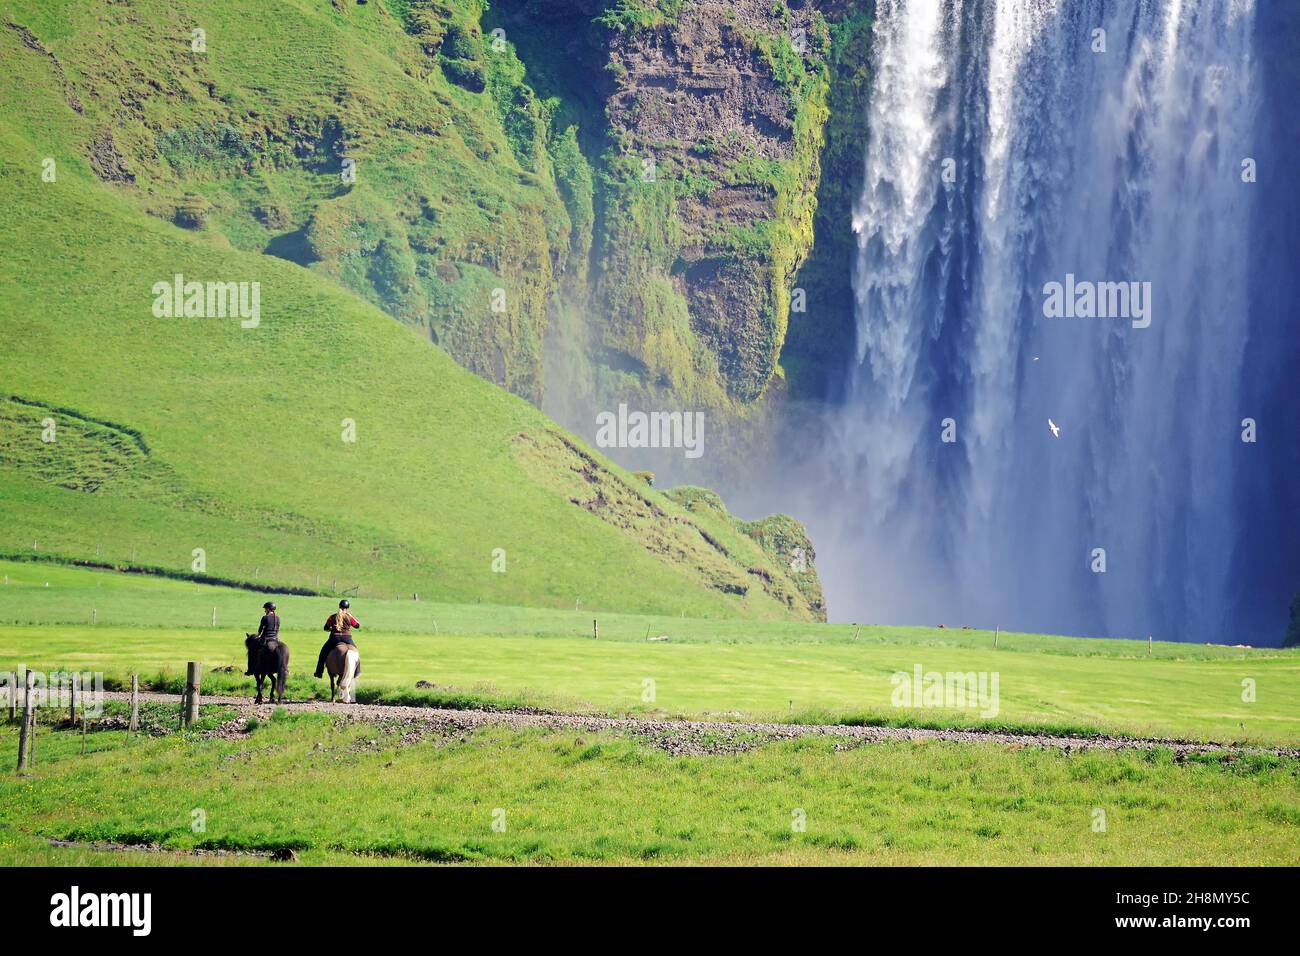 Wassermassen stürzen senkrecht in die Tiefe, Spiegelung im Wasser, grüne Landschaft, zwei Reiter auf isländischen Pferden, Skogafoss, Island Stockfoto